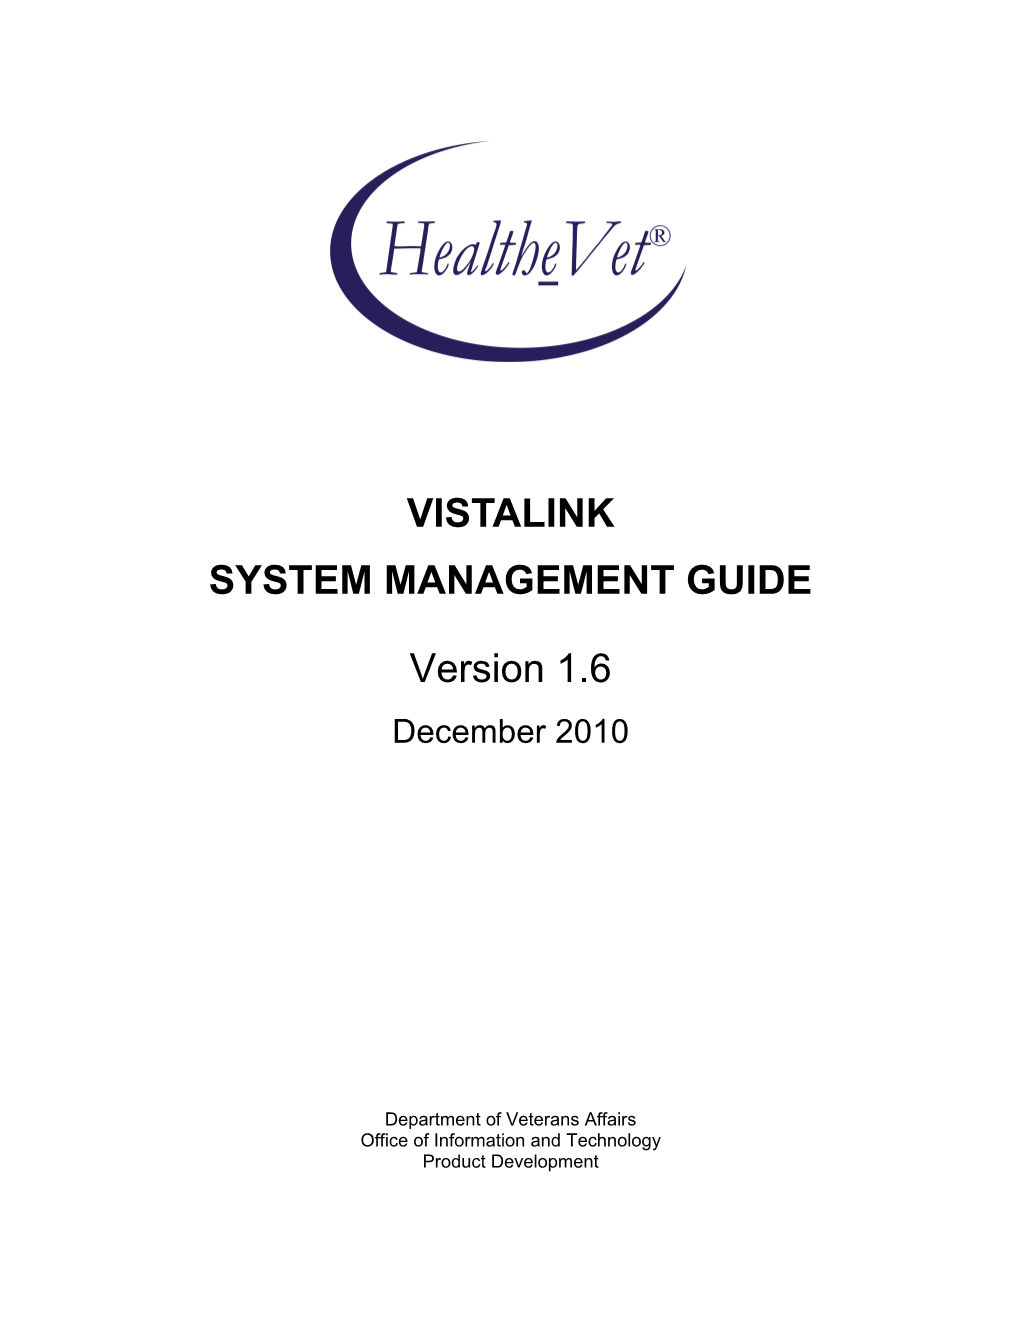 Vistalink V. 1.6 System Management Guide